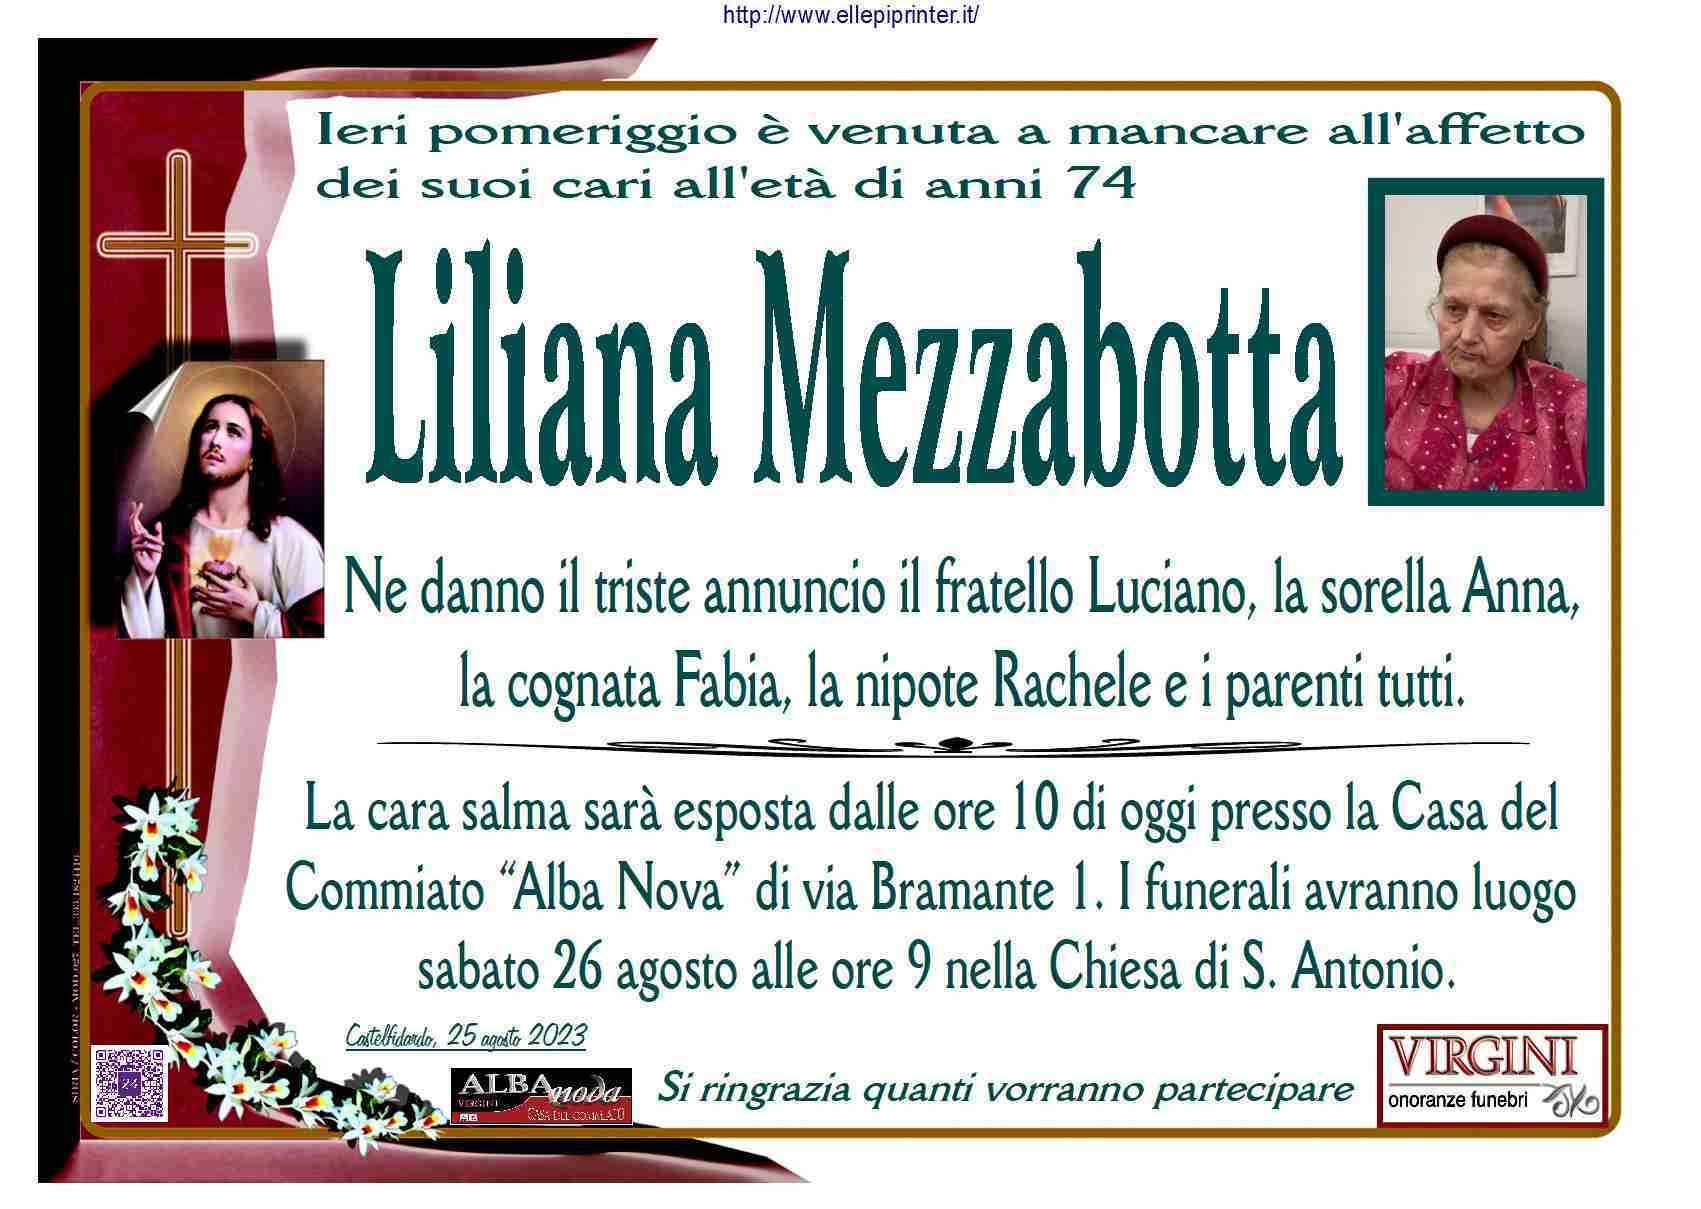 Liliana Mezzabotta